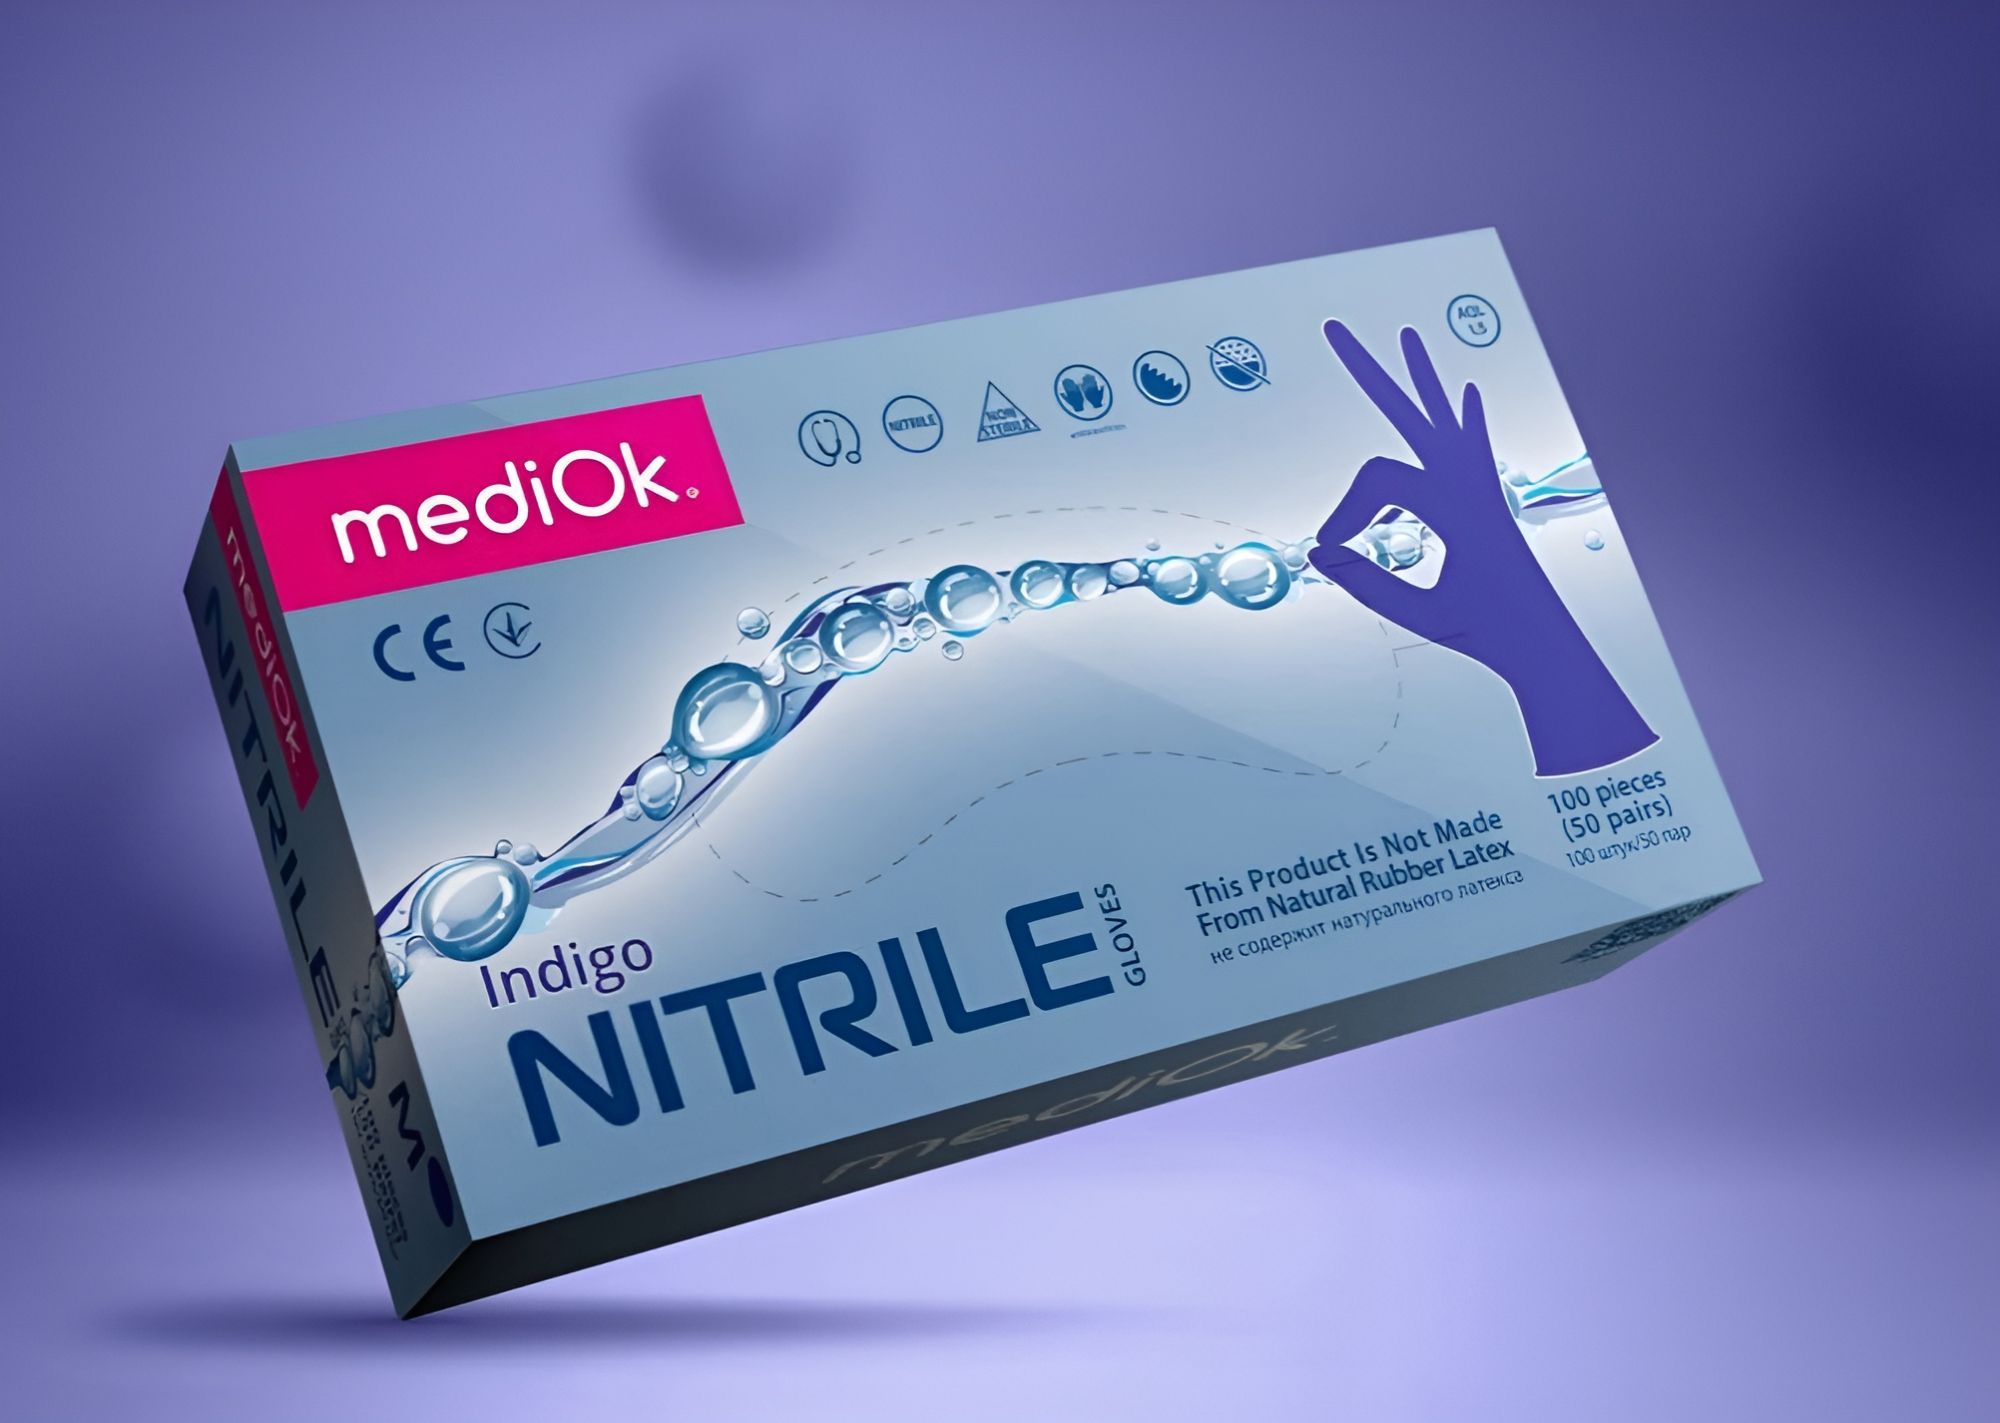 Перчатки mediOk нитриловые, цвет Фиолетовый (Indigo), размер XS